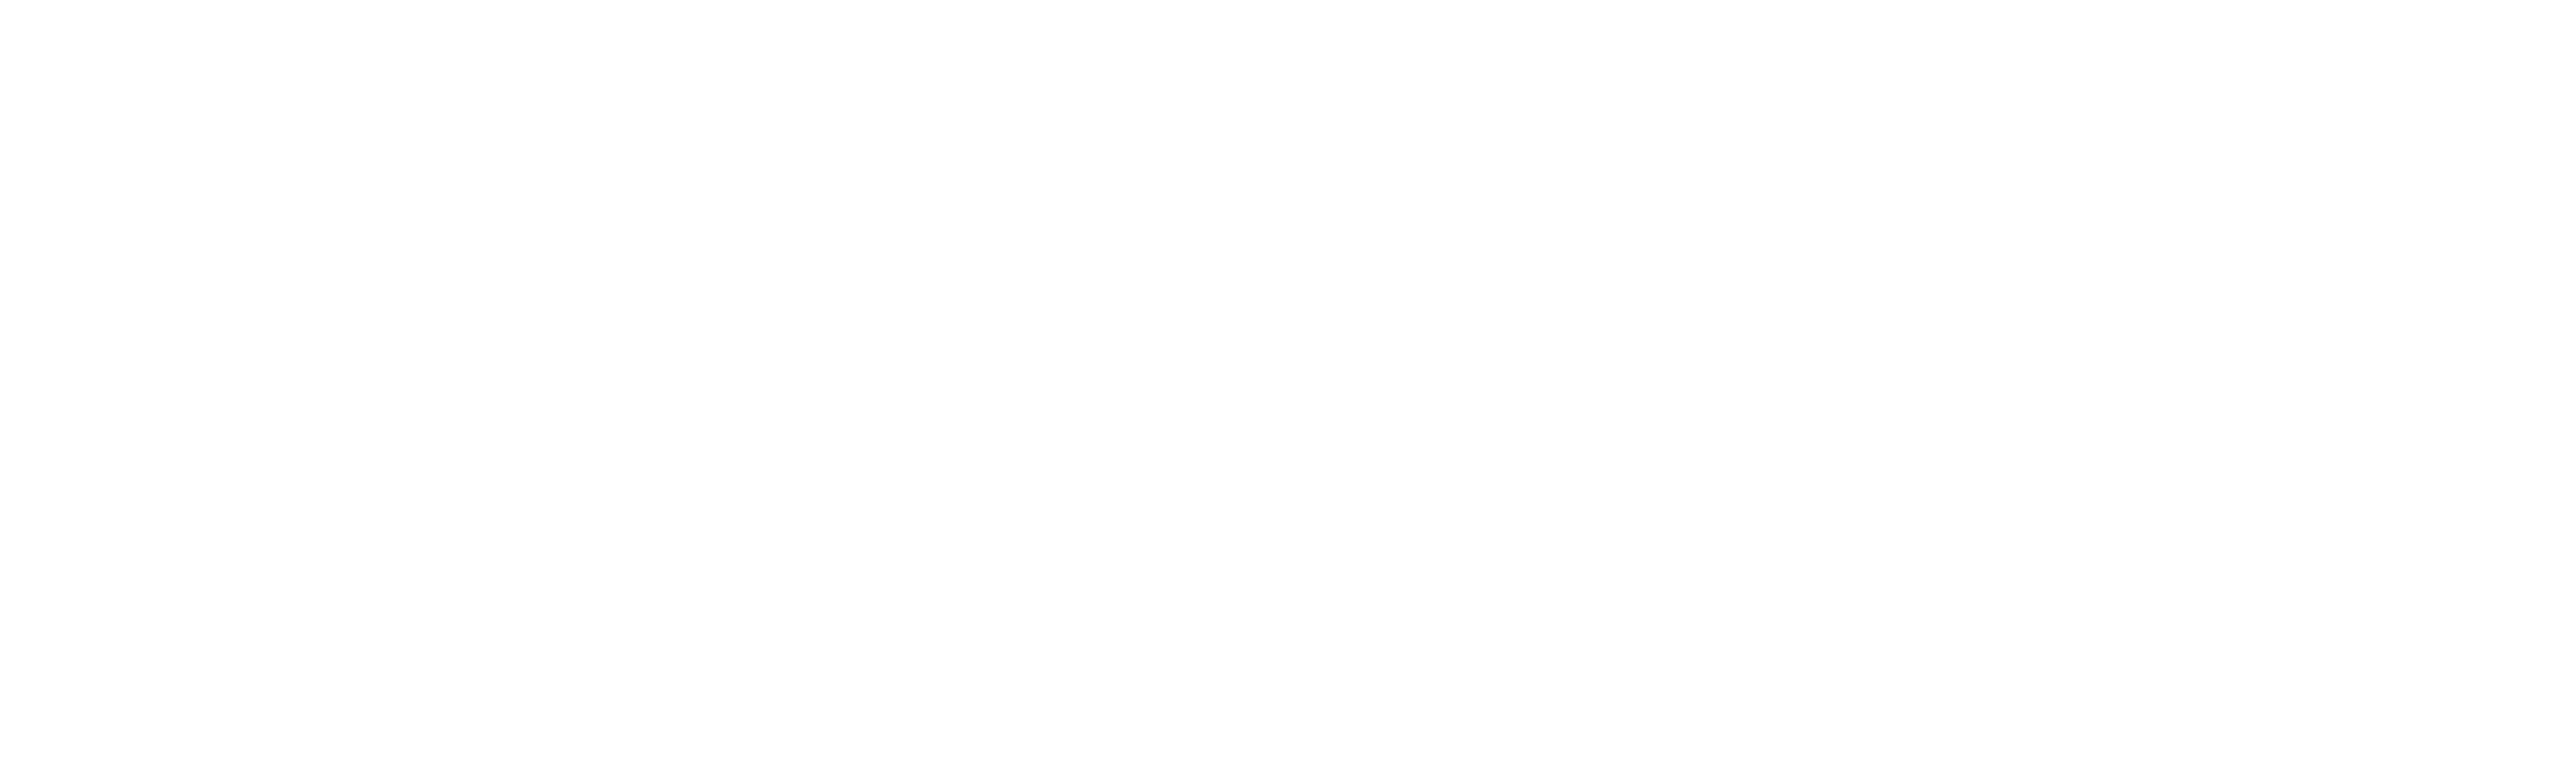 Logo Transfer X Machen mit Slogan